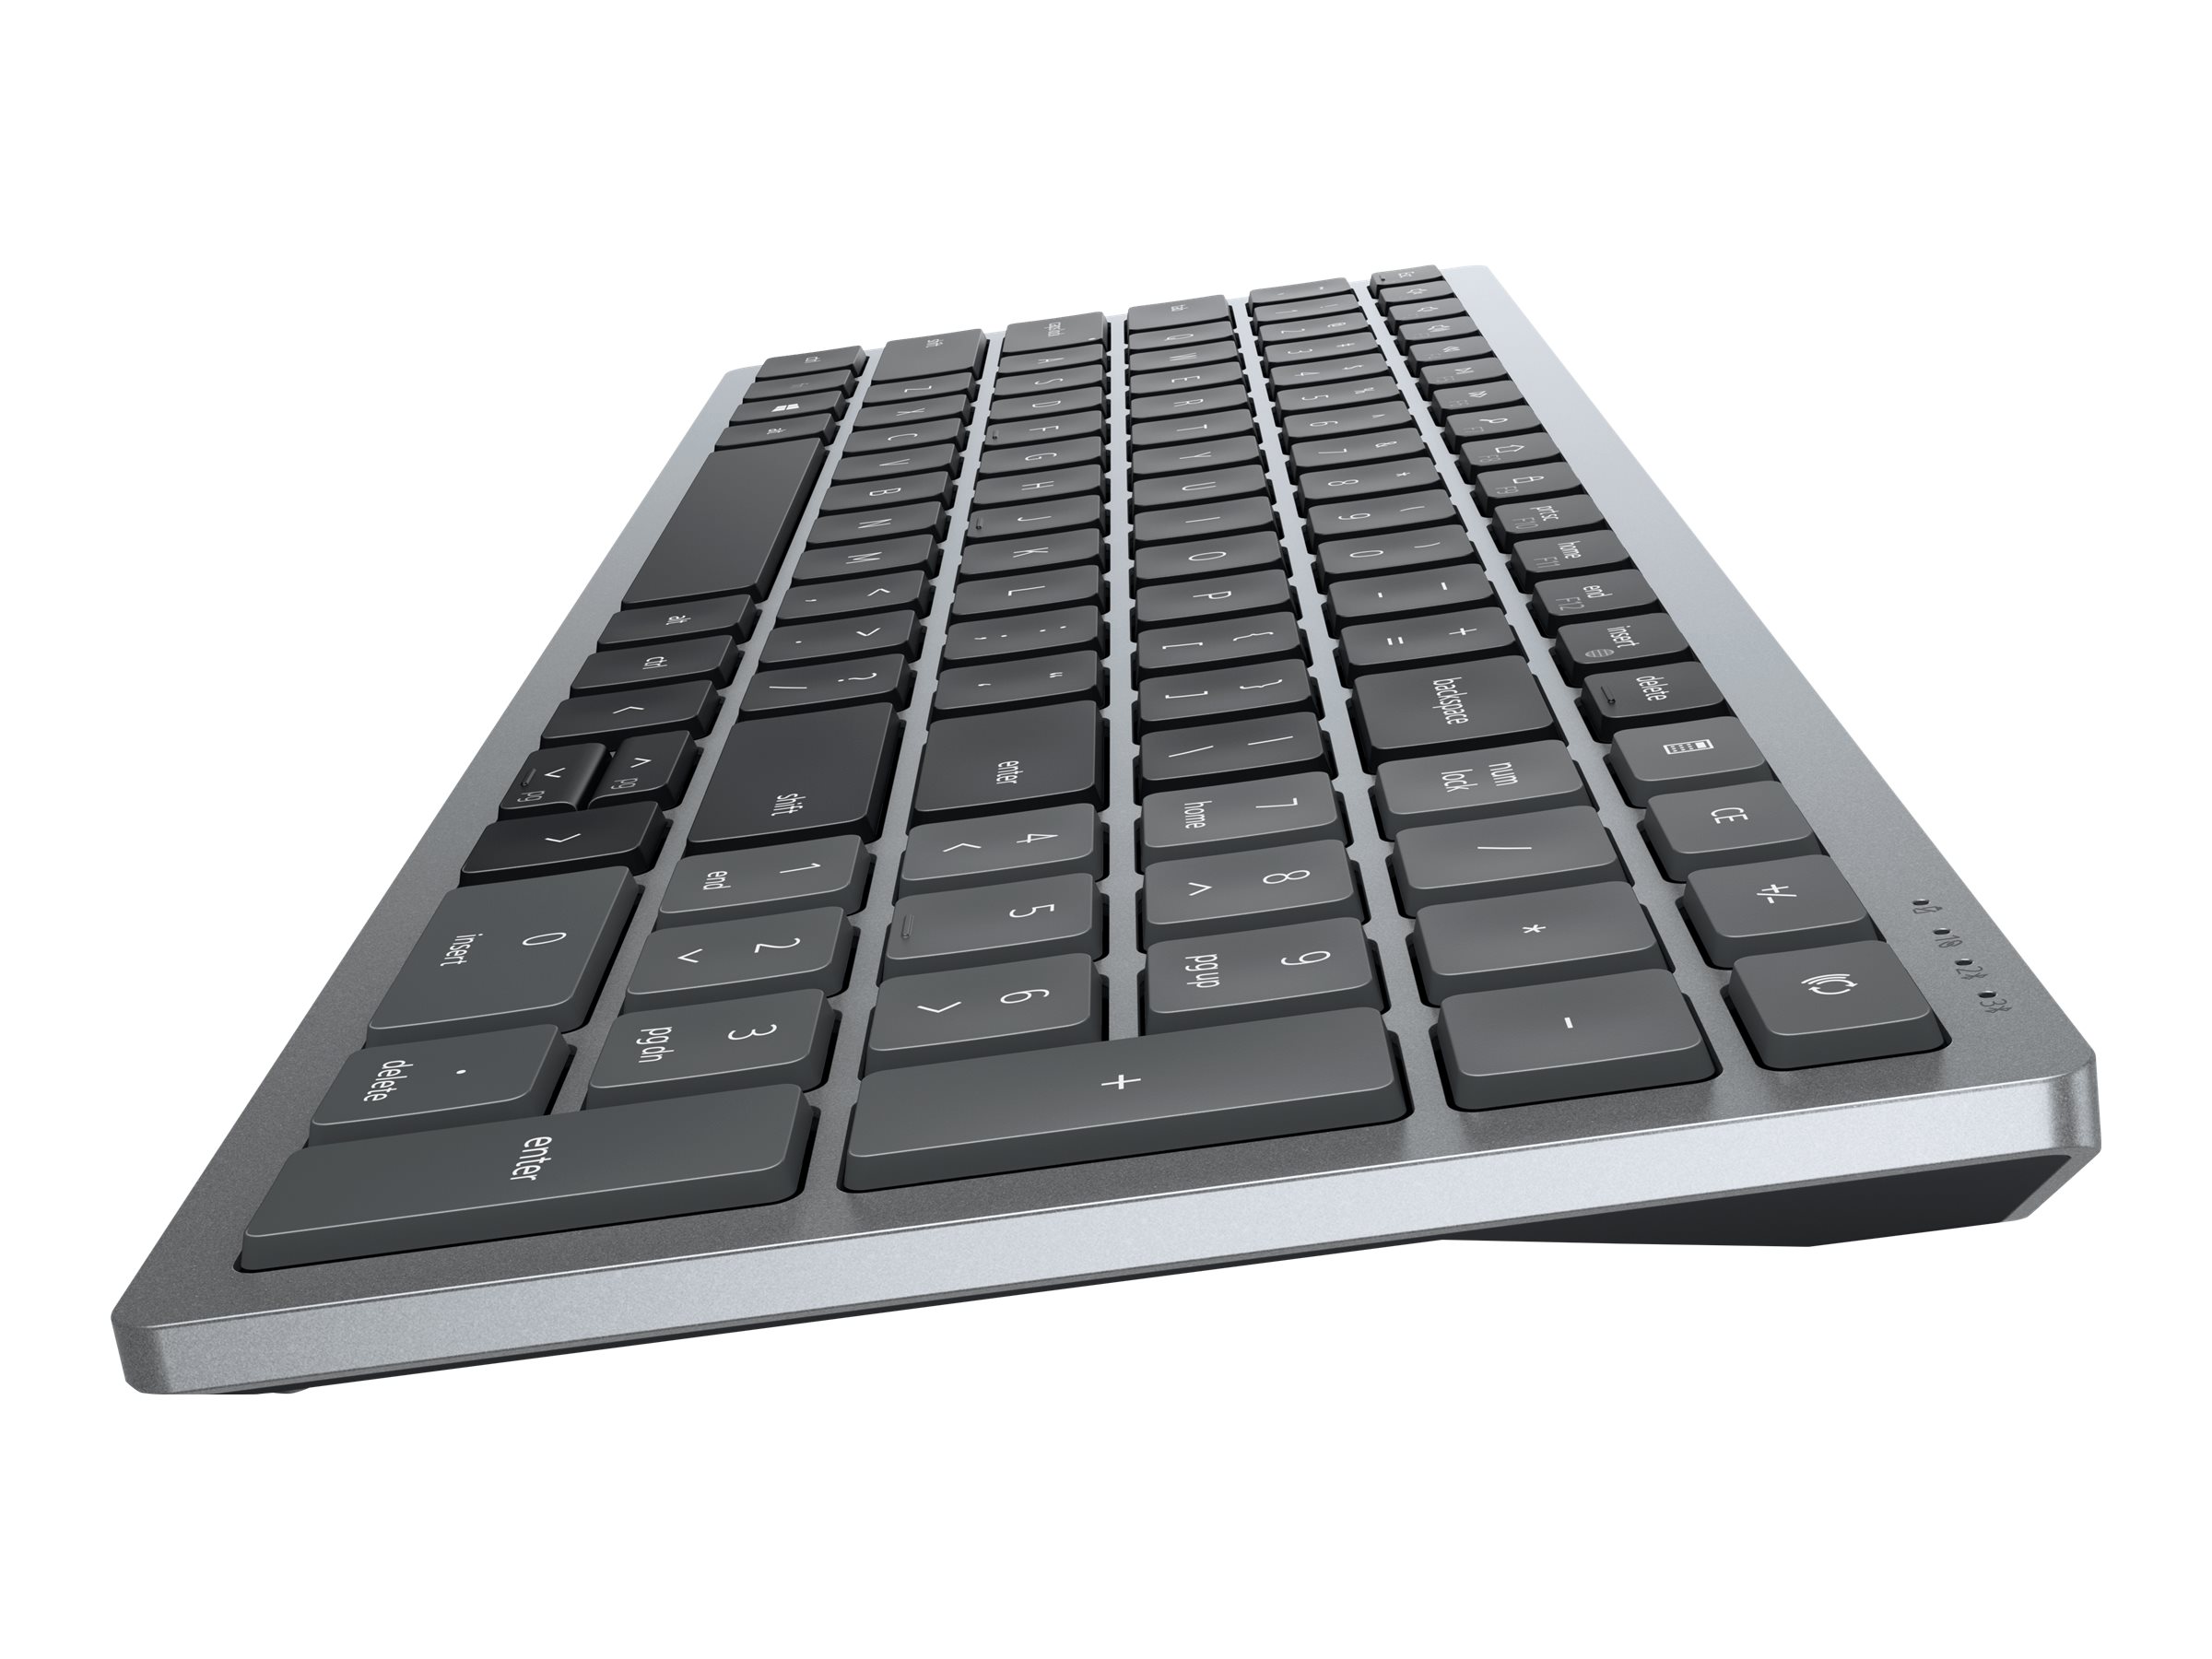 Dell KB740 - Tastatur - compact, multi device